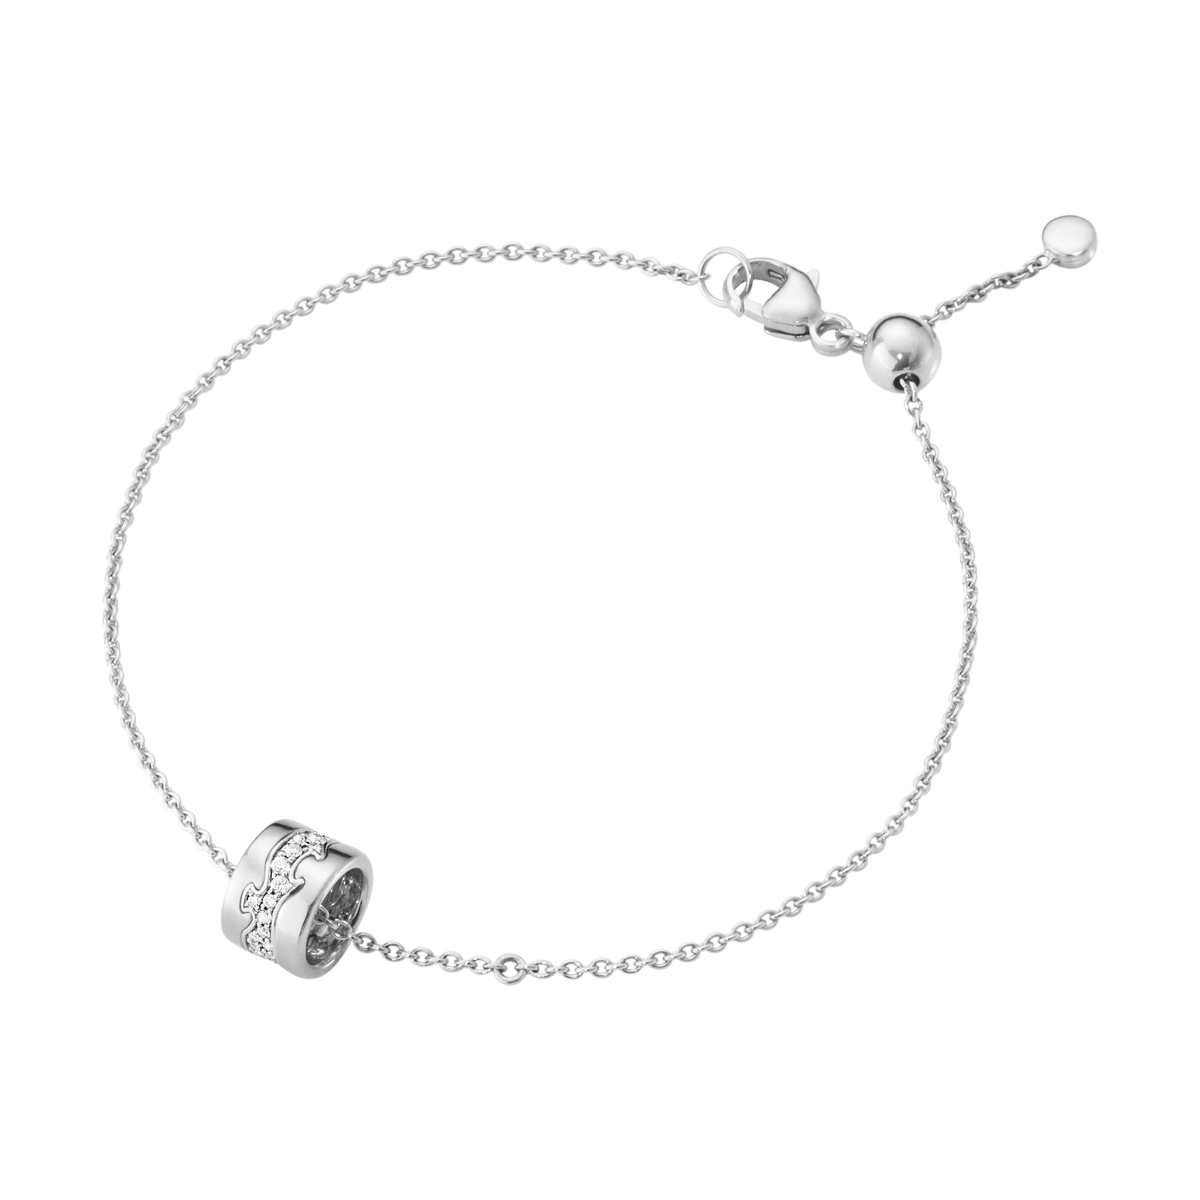 Fusion armbånd med diamanter - sølv fra Georg Jensen